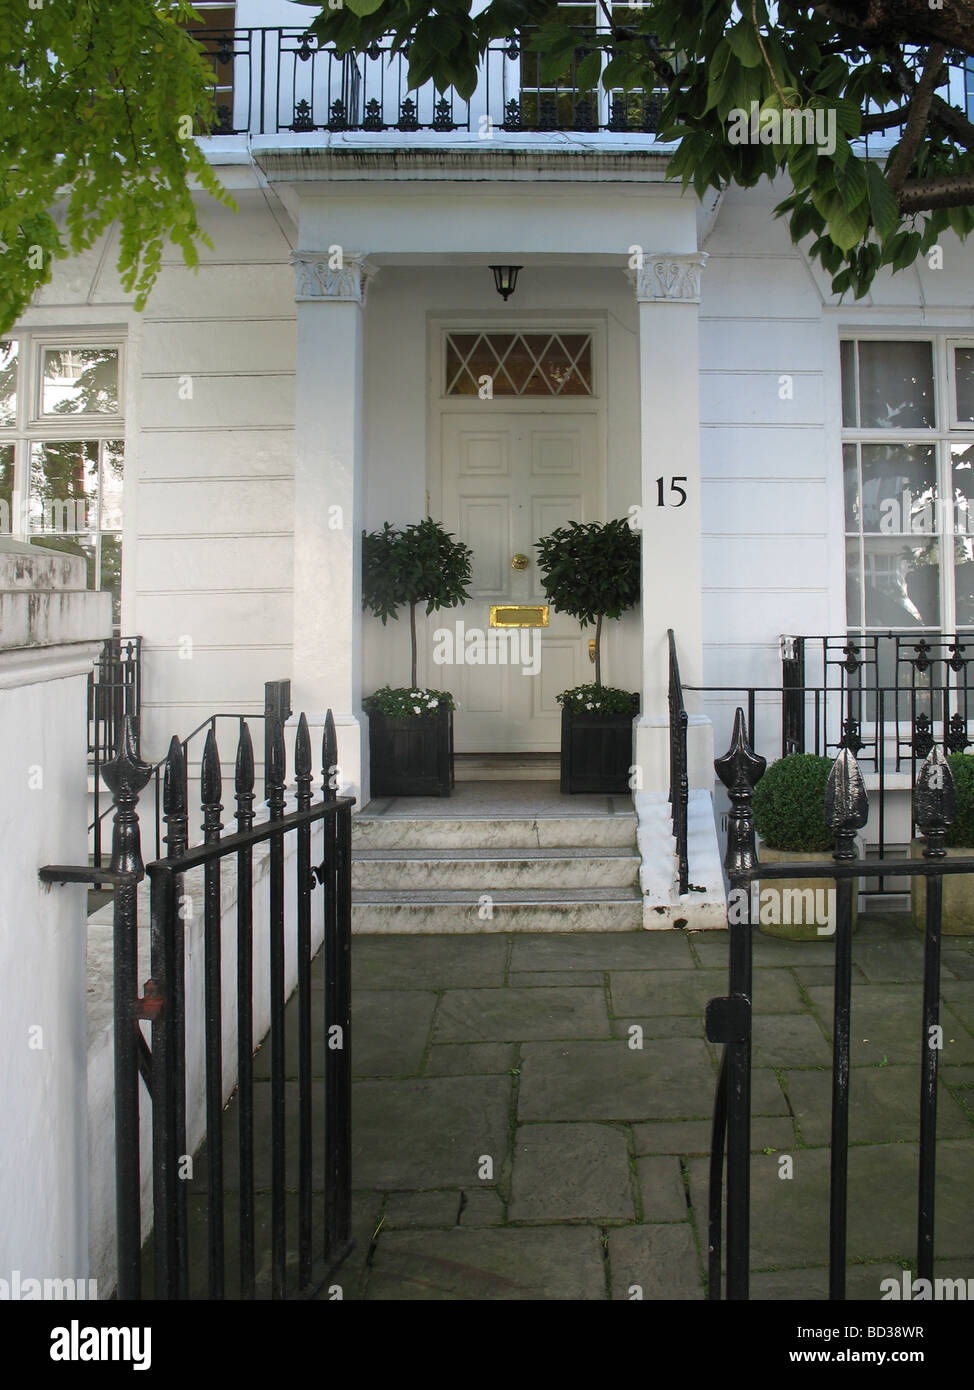 Porte d'entrée élégante dans une rue près de Harrods London Knightsbridge Banque D'Images